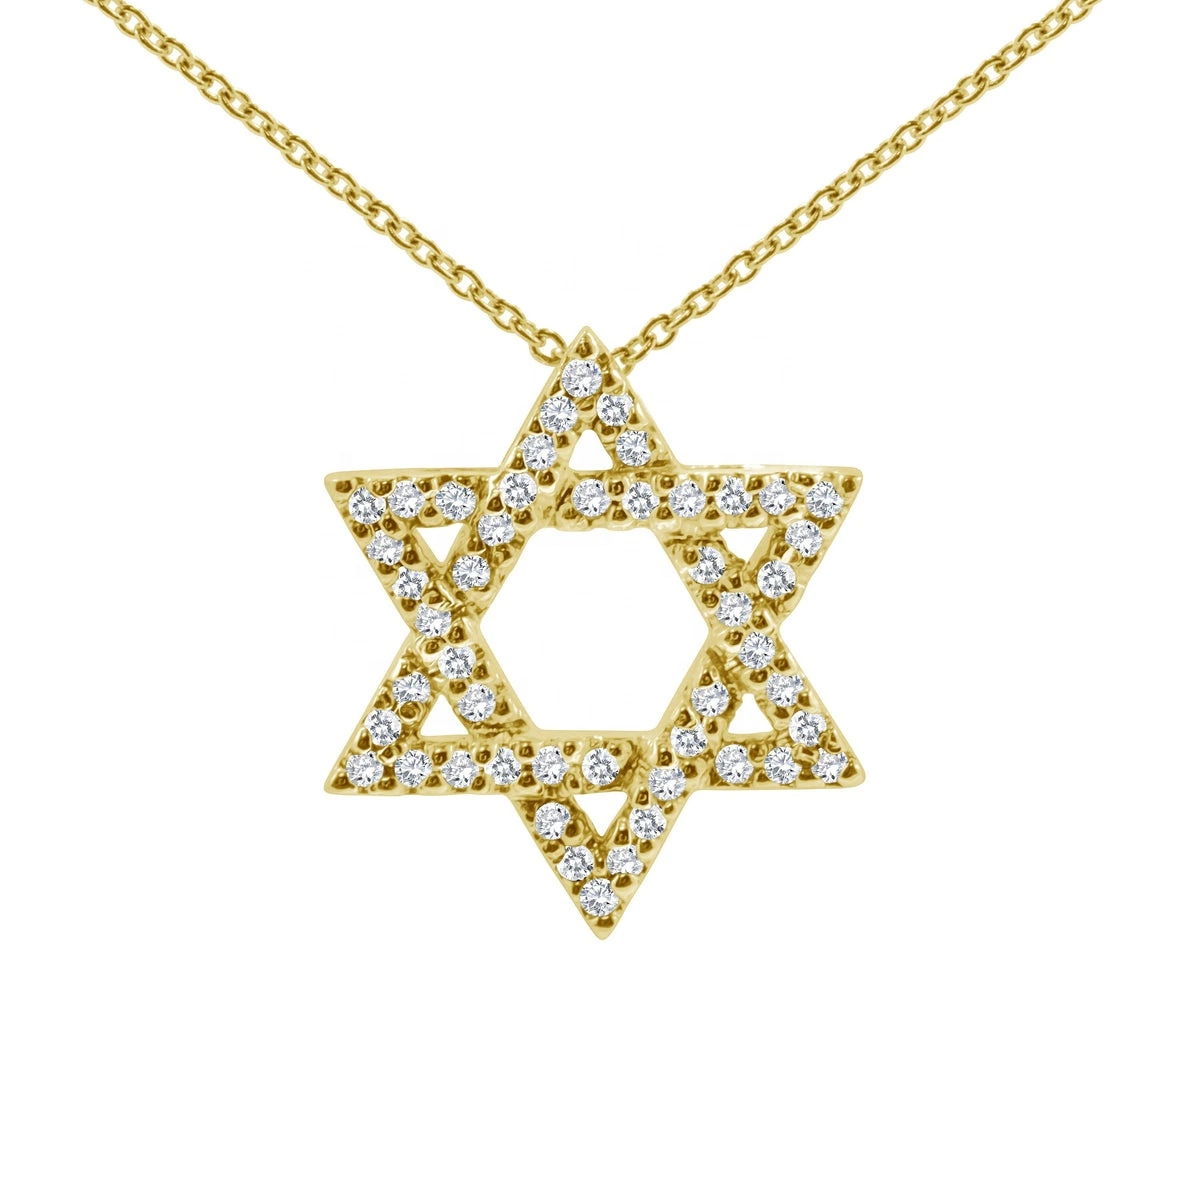 Bijoux personnalisés Fashion 925 Sterling argent Jewish Star pendentif or Collier plaqué de diamants CZ étincelants Star of David